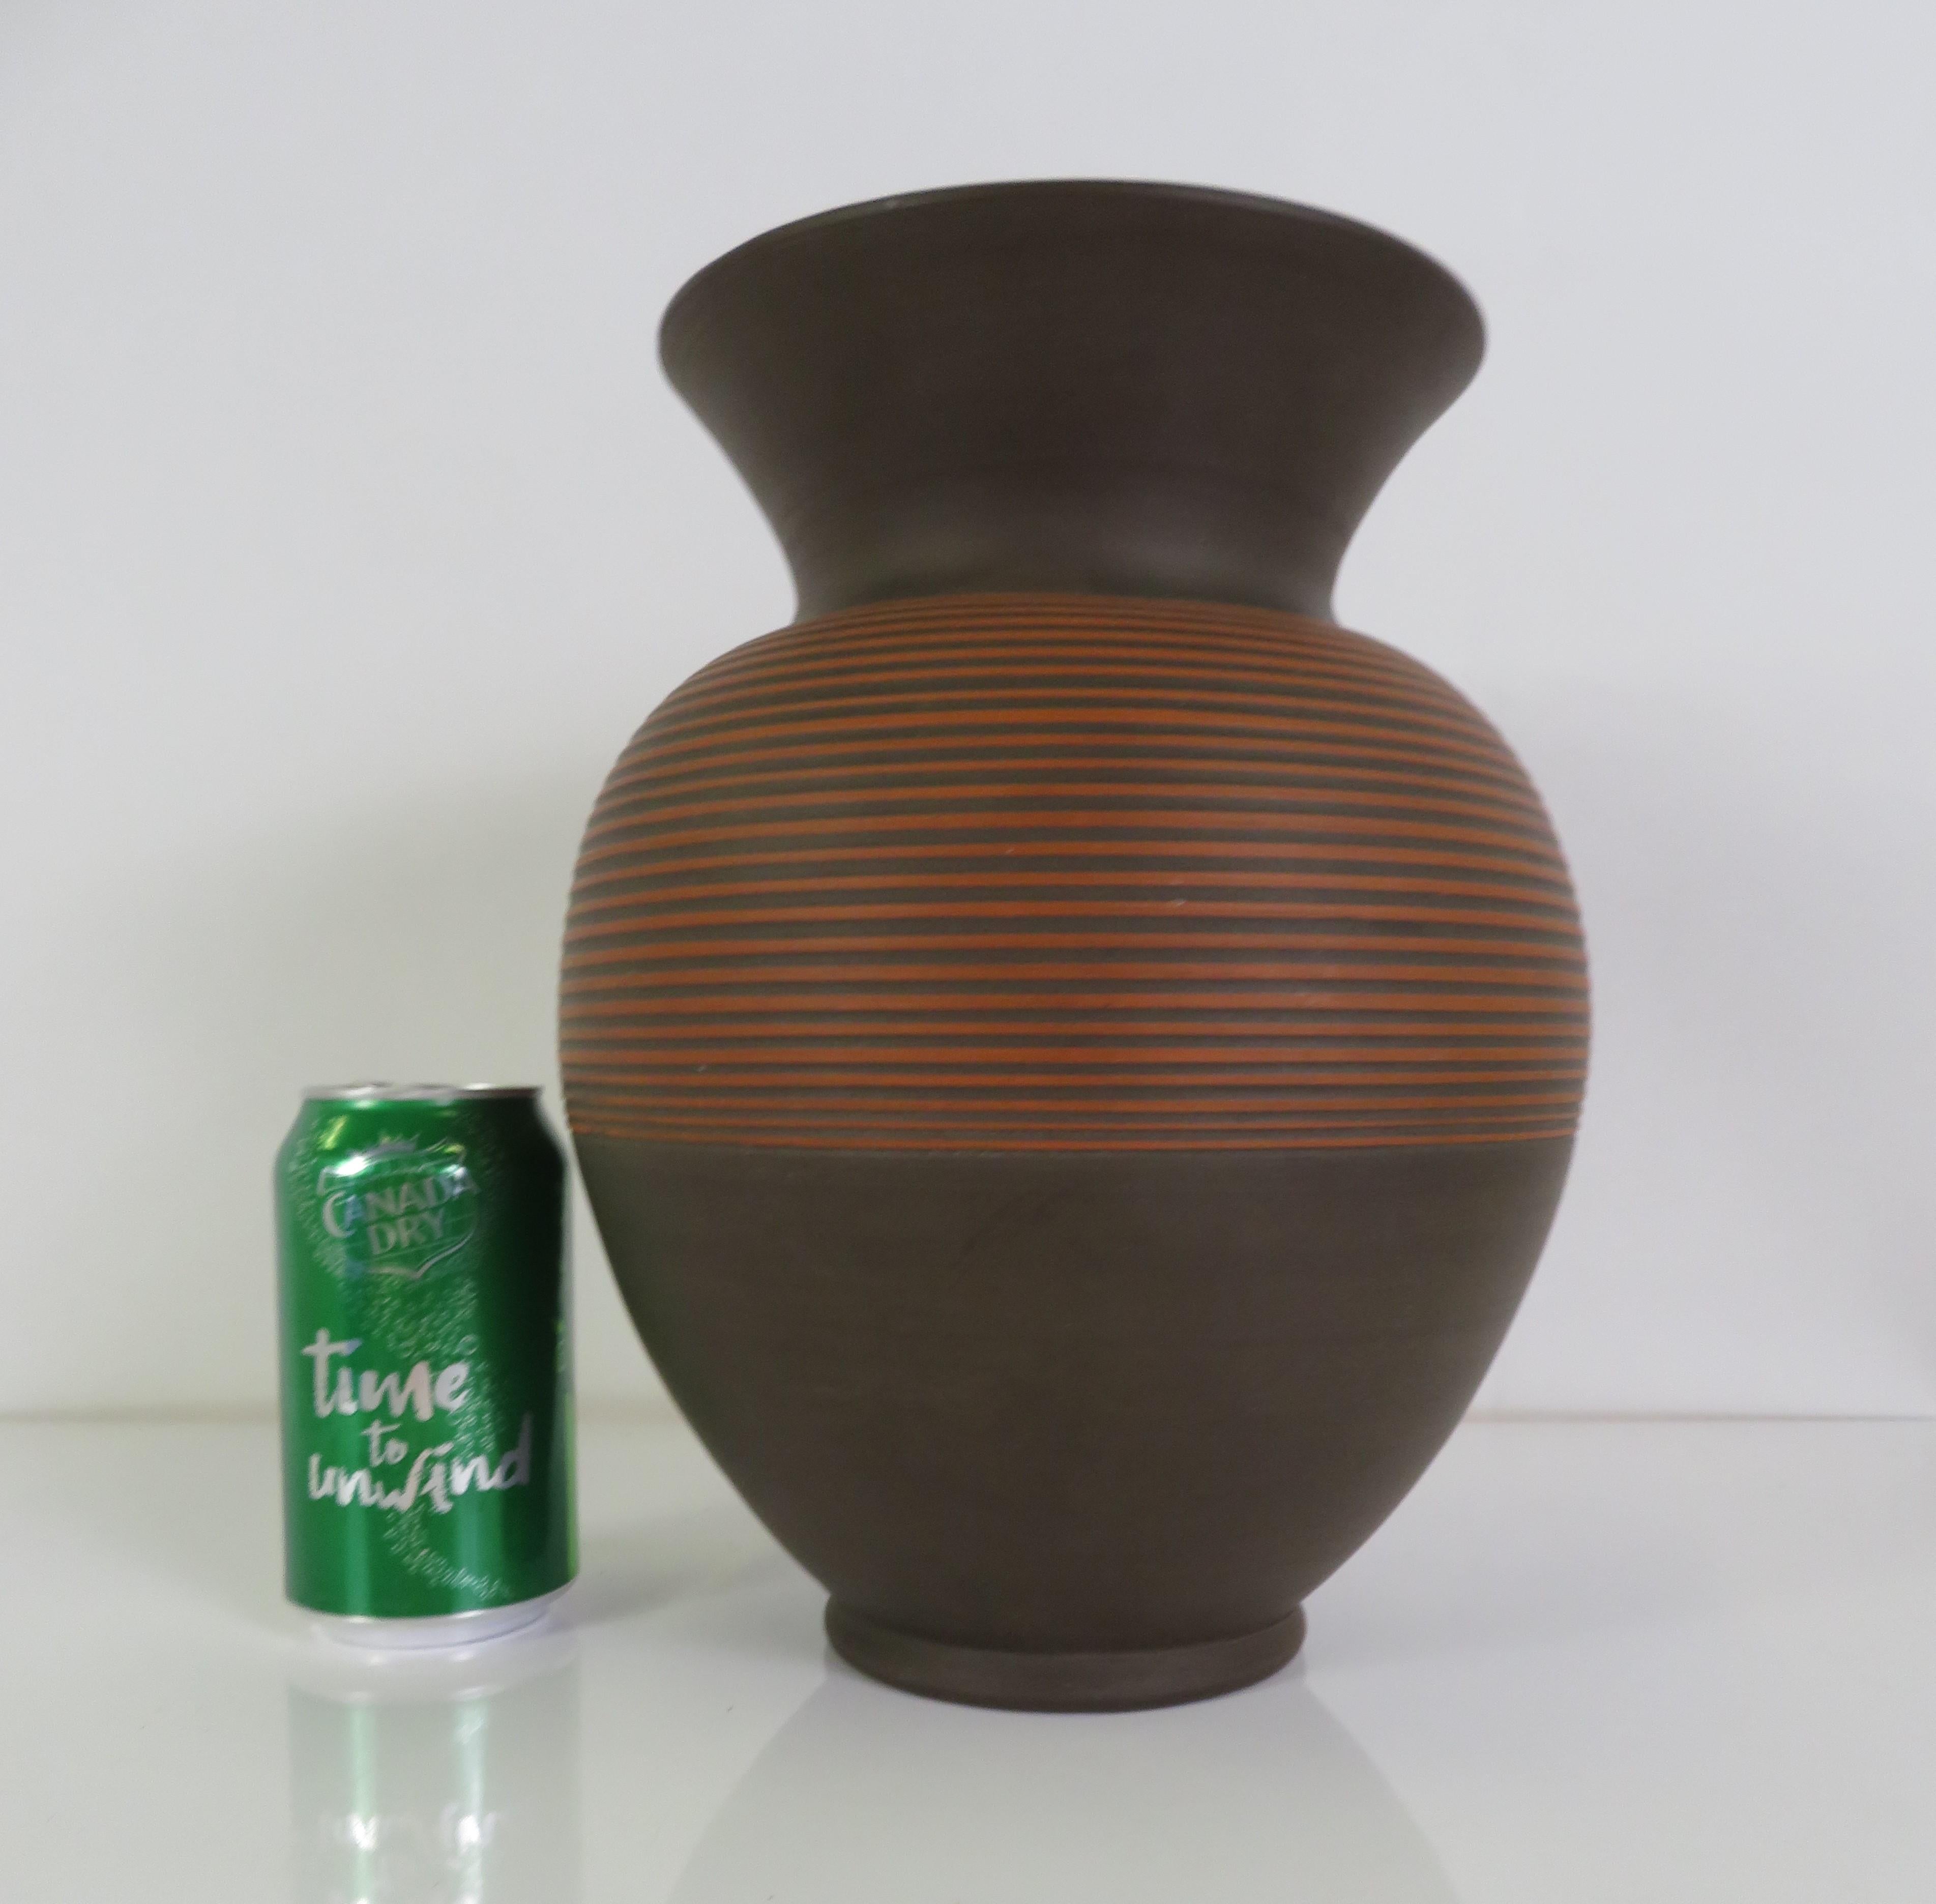 Große Klinker deutsche Mid Century Modern Pottery Vase 1960s.  Der Korpus der Vase ist mit einer schokoladenbraunen Glasur bemalt, und in den Ton sind Bänder eingeschnitten, die den roten Ziegelton darunter freilegen. Auf dem flachen Boden sind das